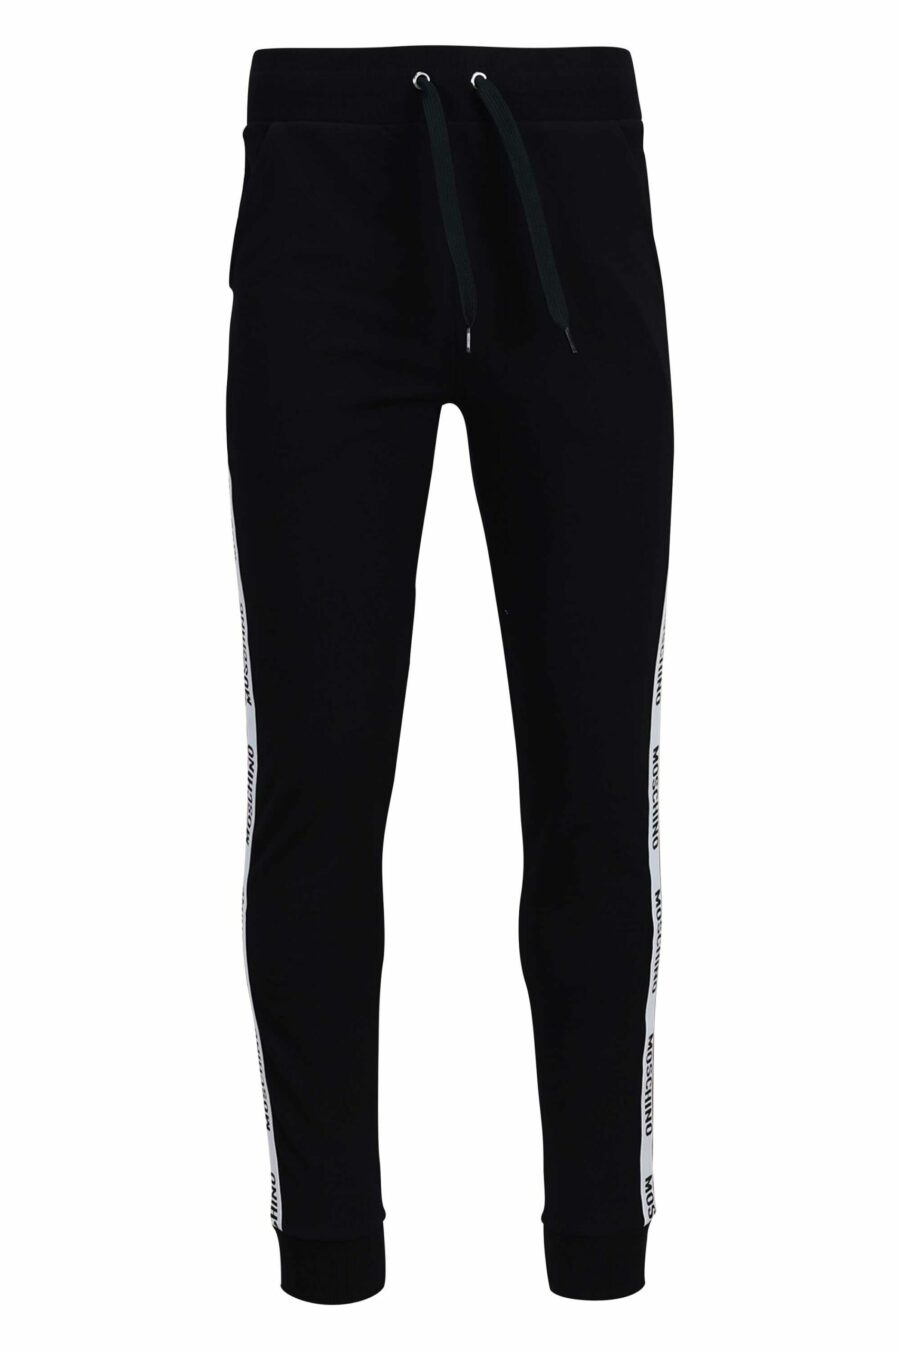 Pantalon de survêtement noir avec logo sur les côtés - 667113031170 échelle